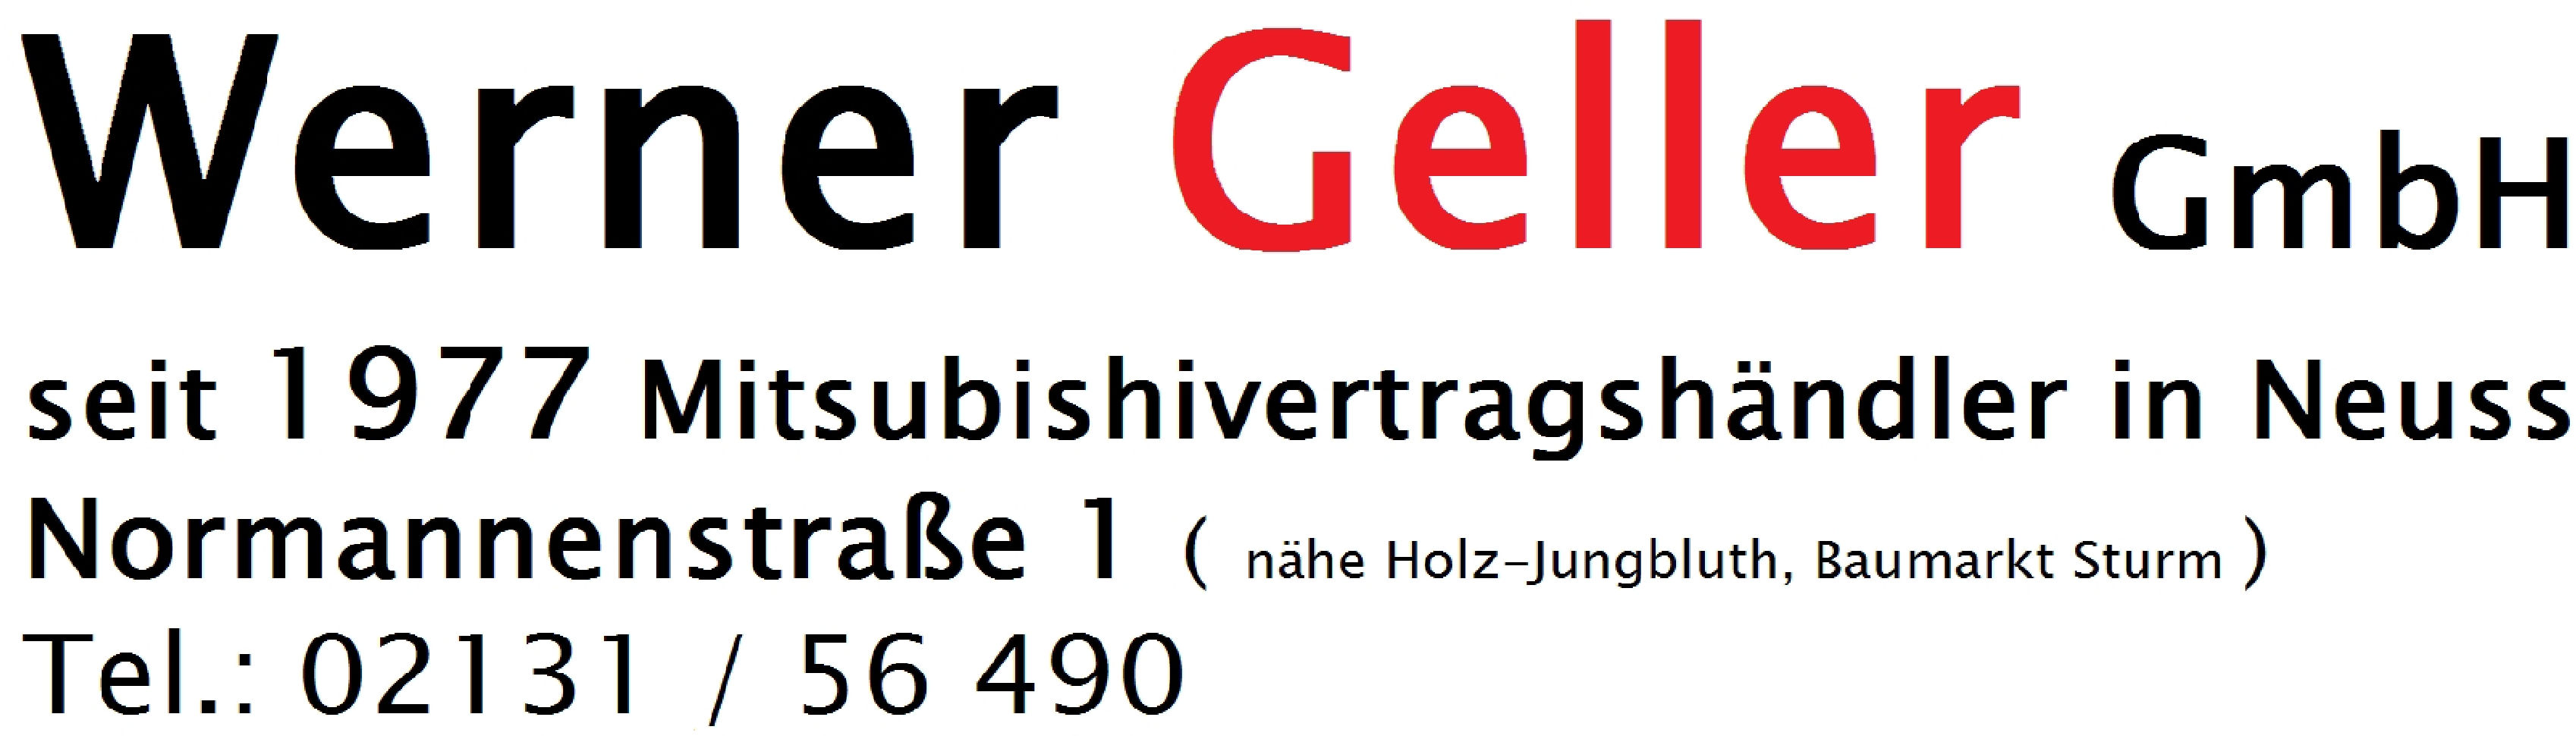 Werner Geller GmbH in Neuss